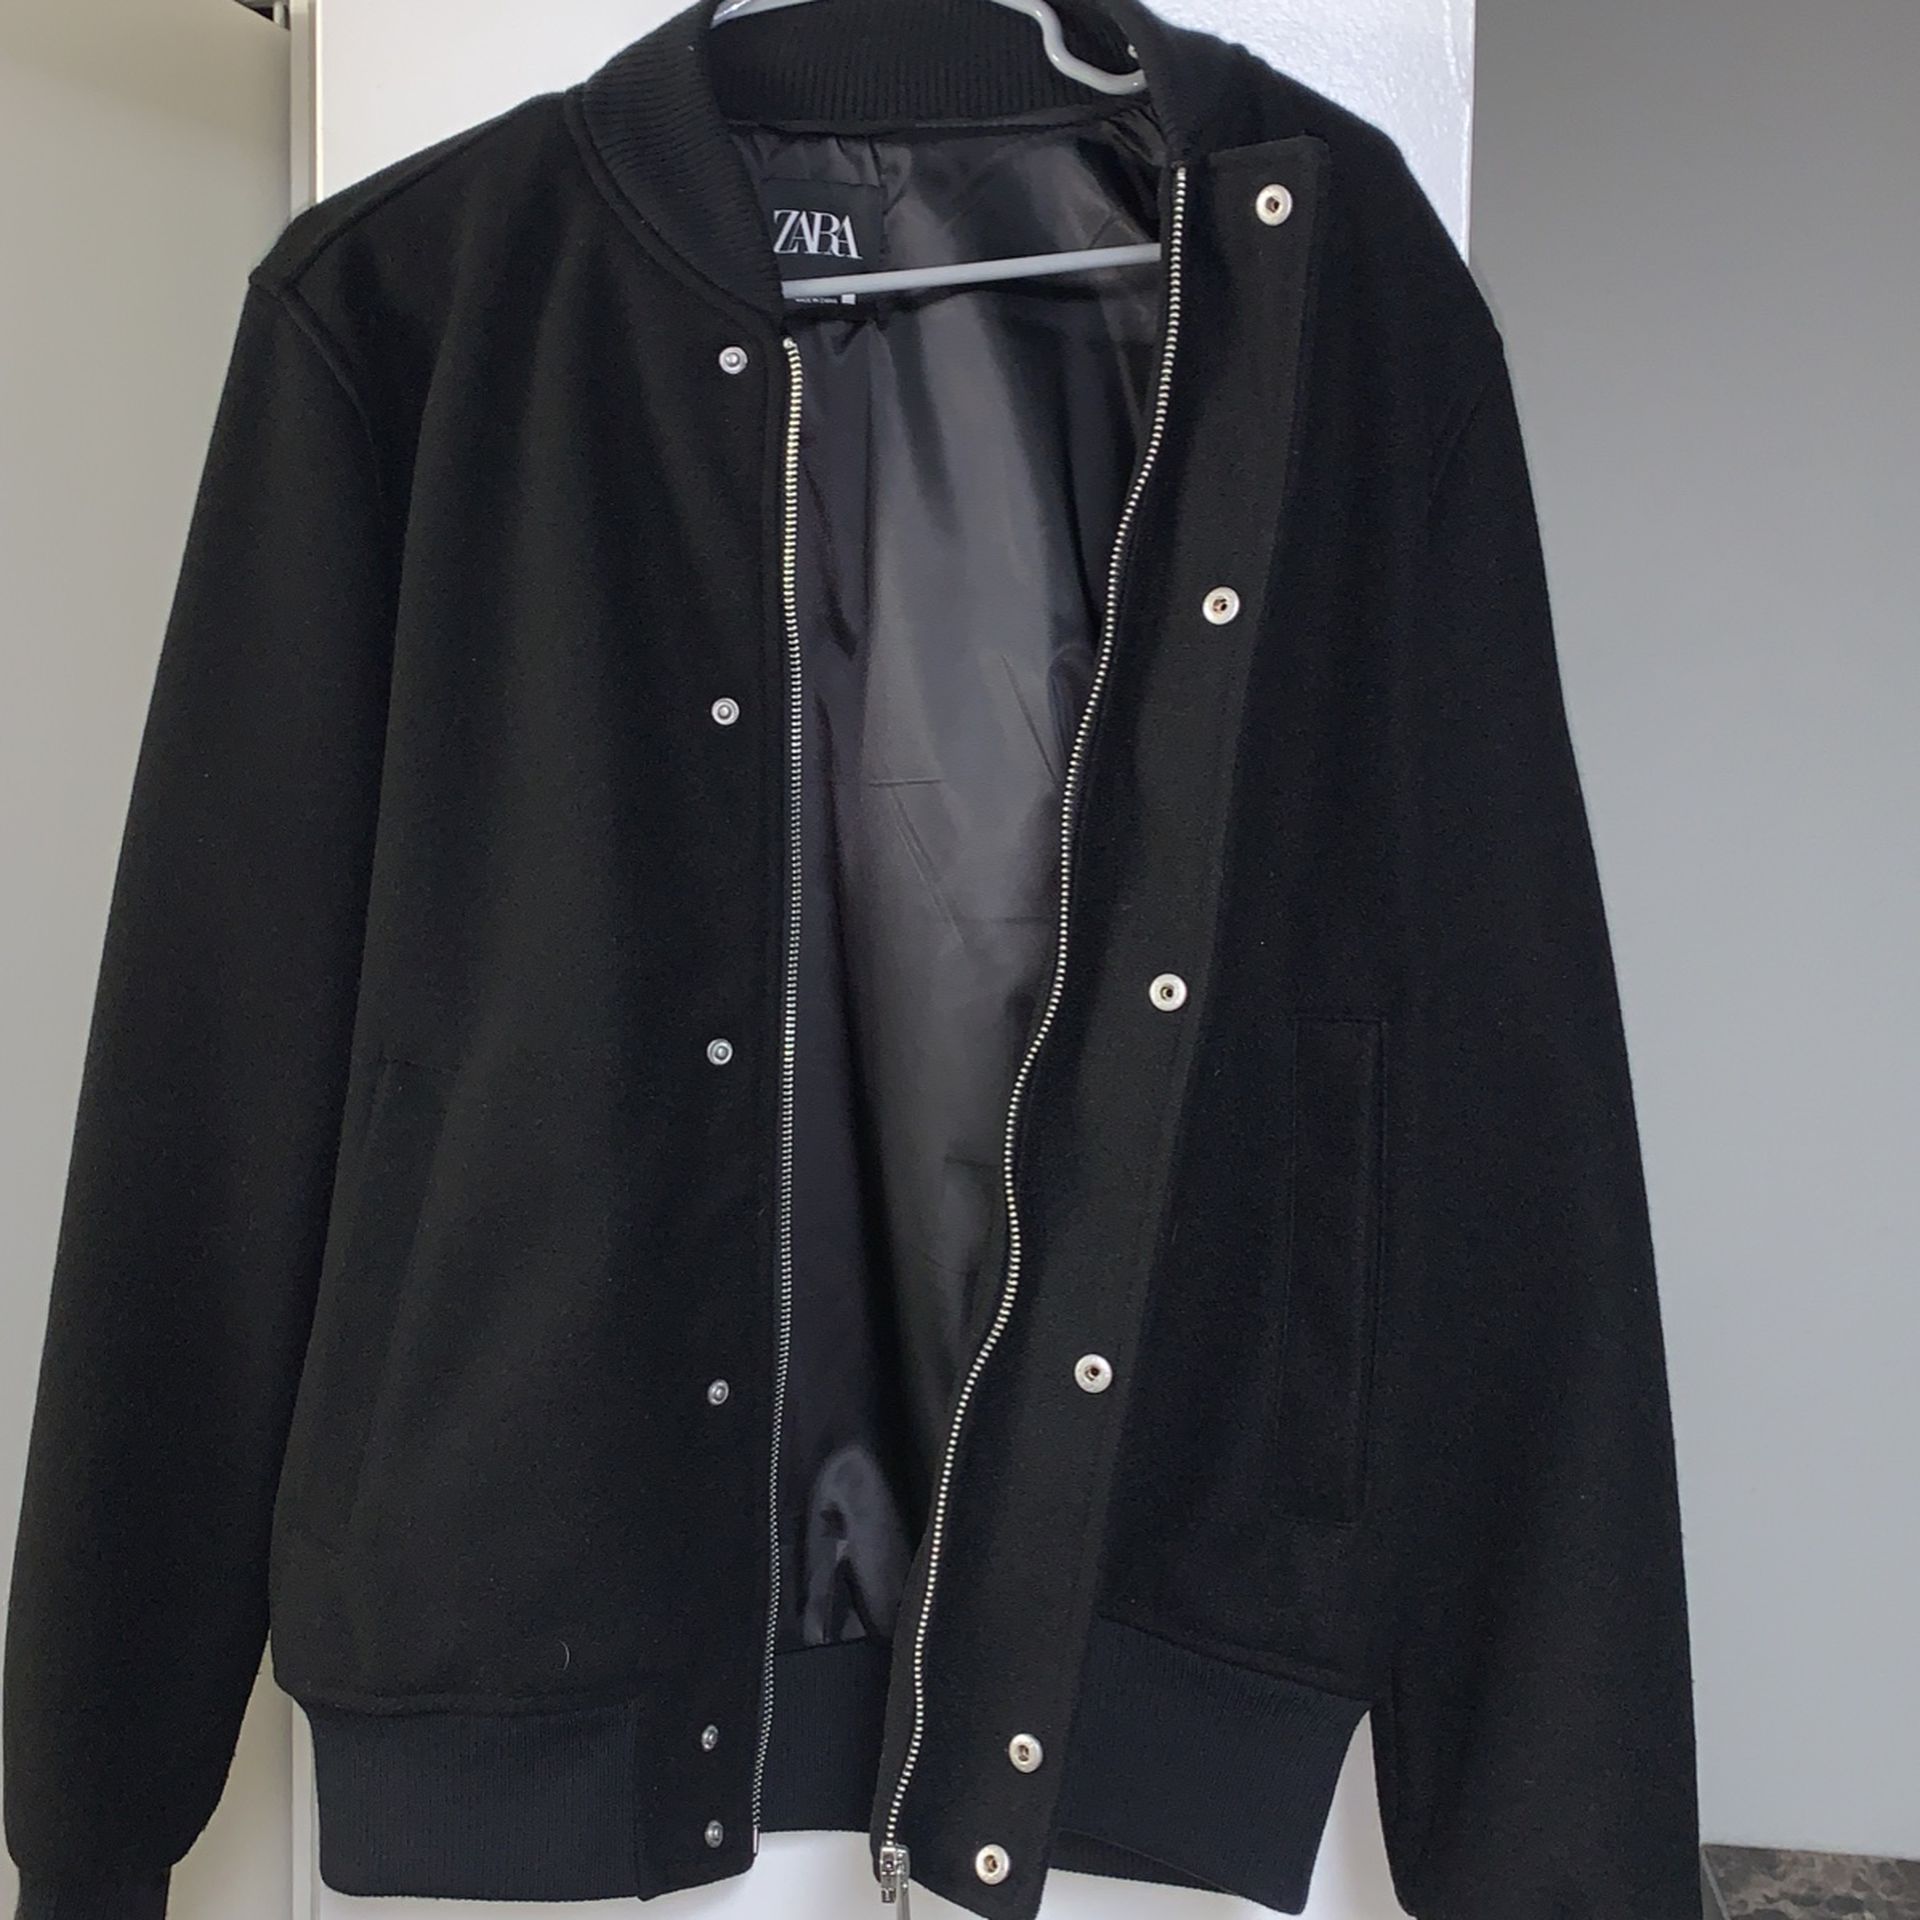 Men’s Zara Jacket for Sale in Tempe, AZ - OfferUp